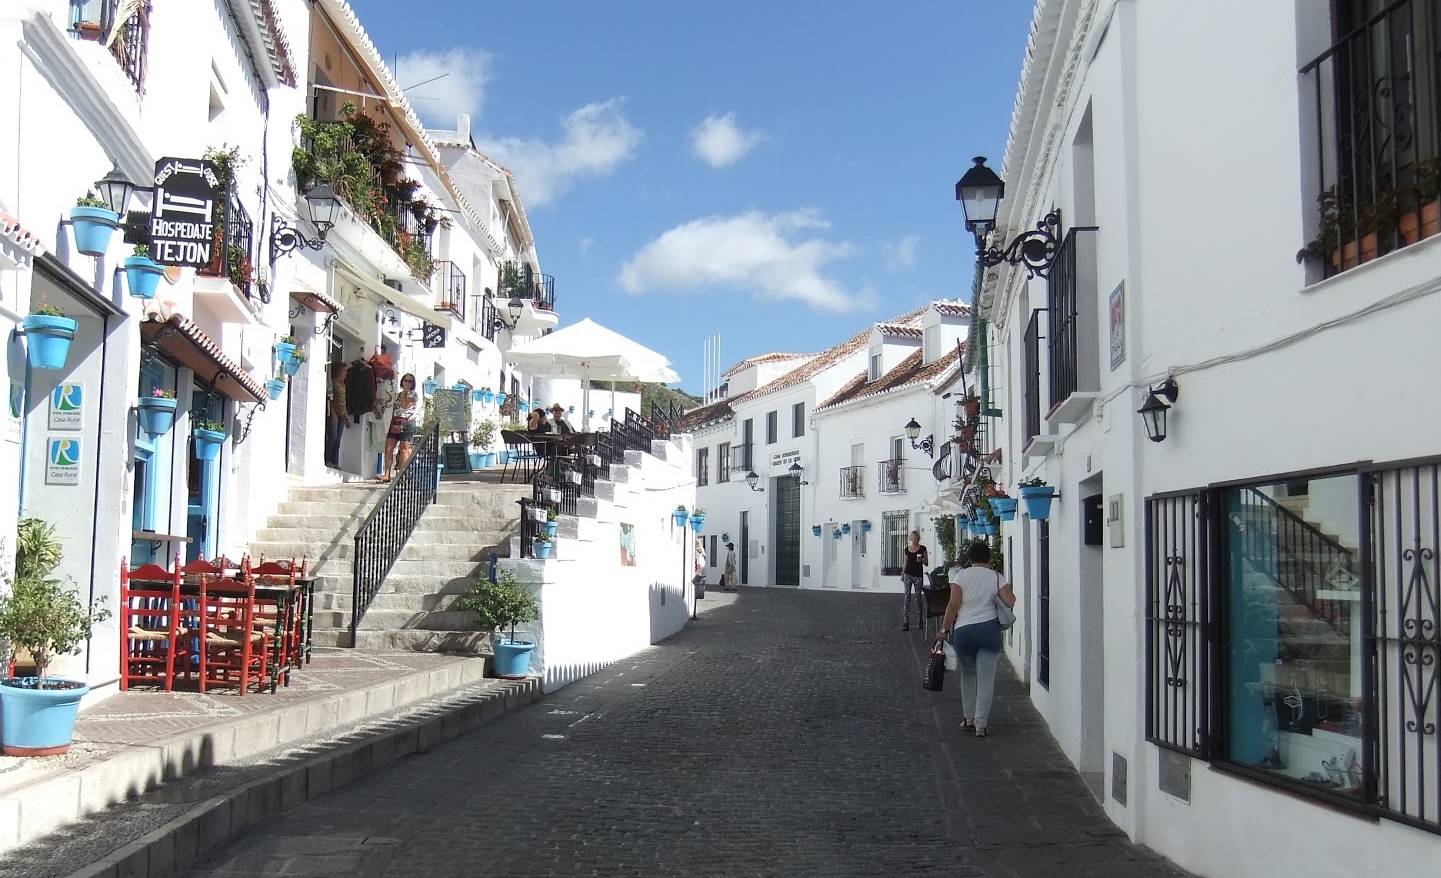 Foto de una de las calles de Mijas donde se puede ver el color blanco característico de sus calles